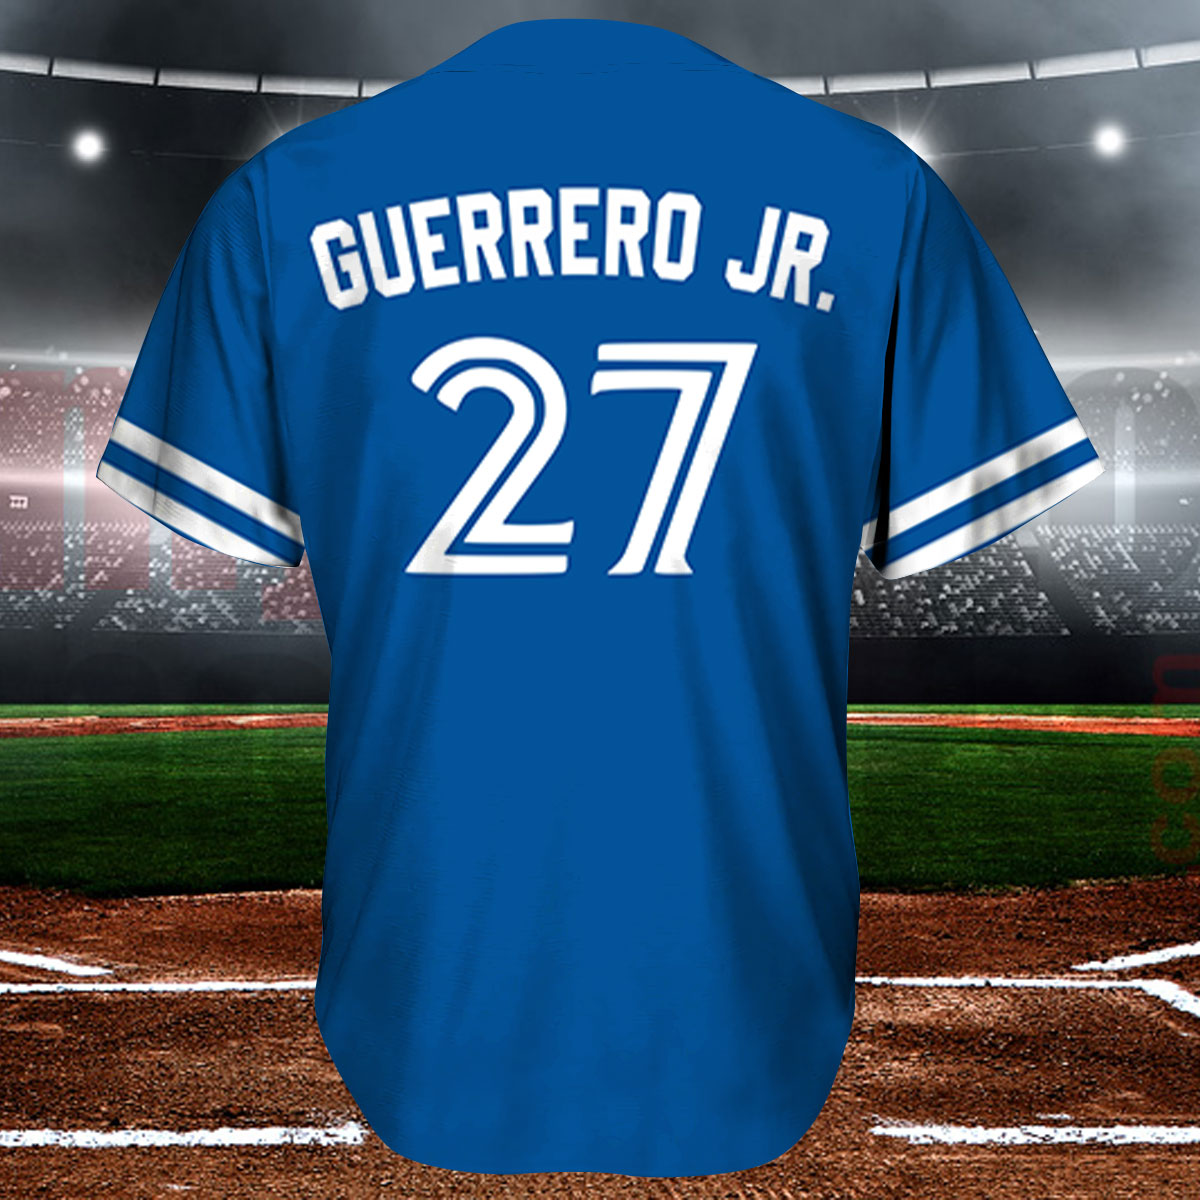 Vladimir Guerrero Jr. Toronto Blue Jays Light Blue Baseball Jersey